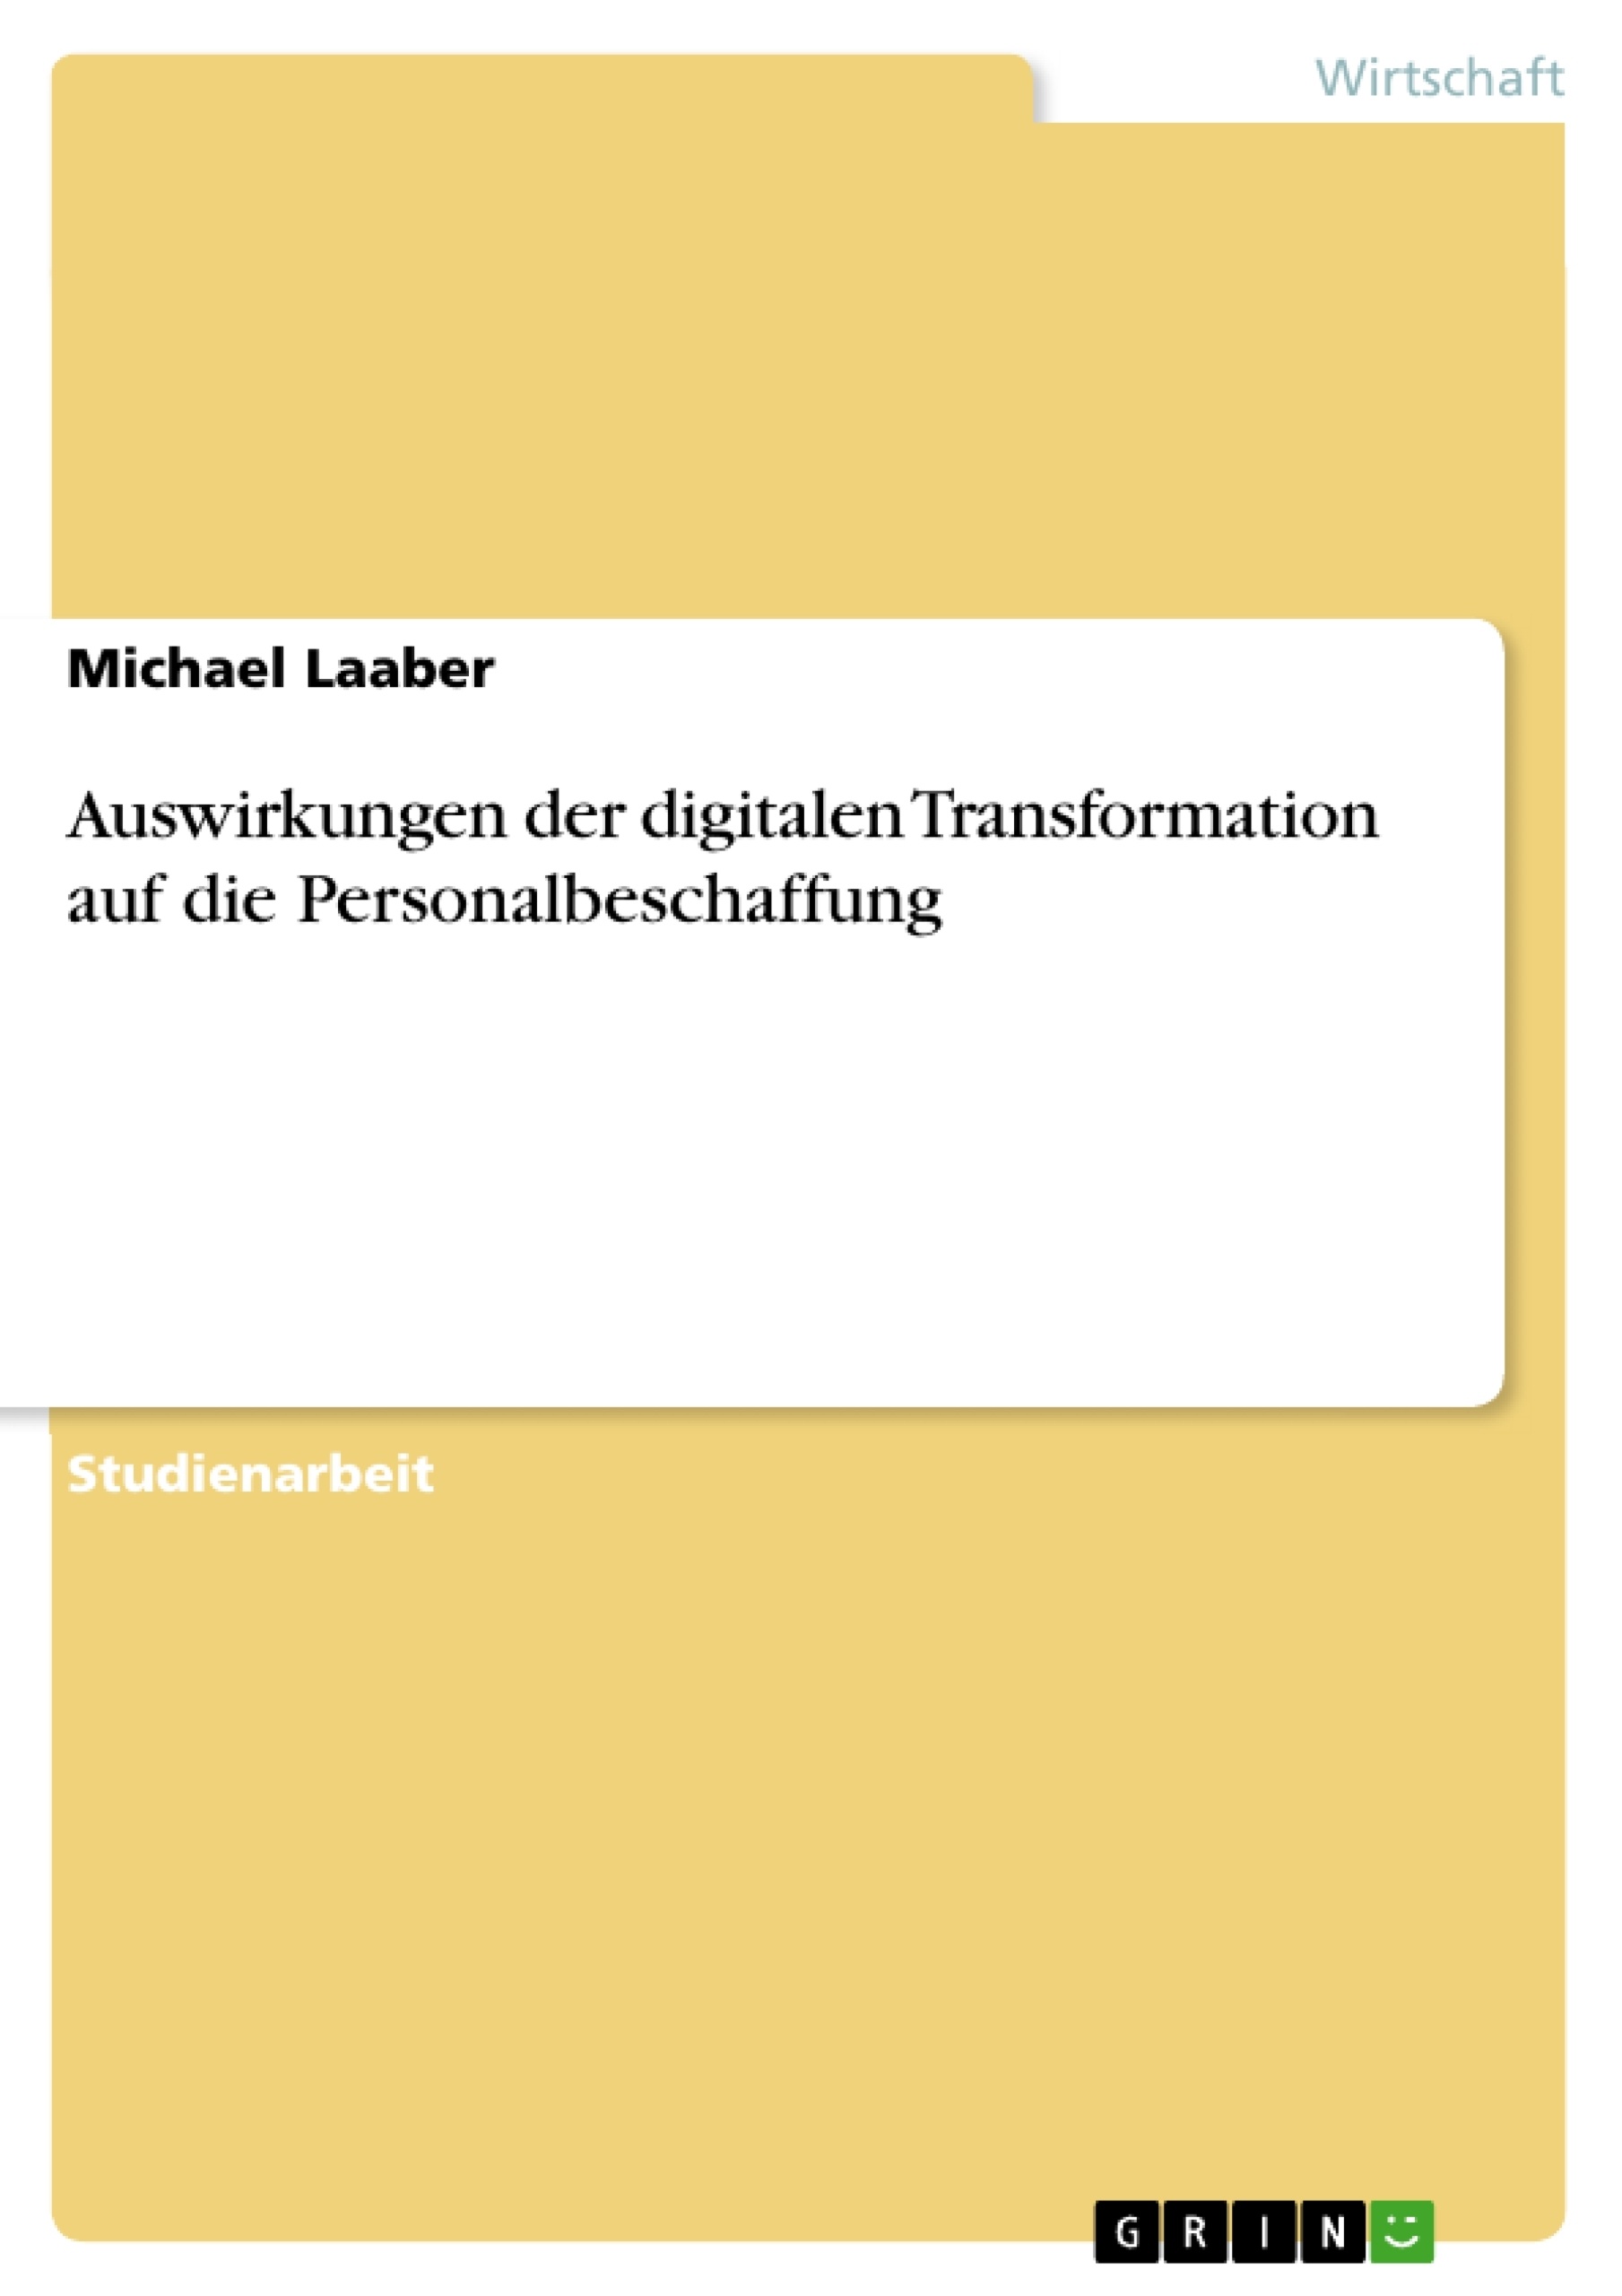 Titel: Auswirkungen der digitalen Transformation auf die Personalbeschaffung